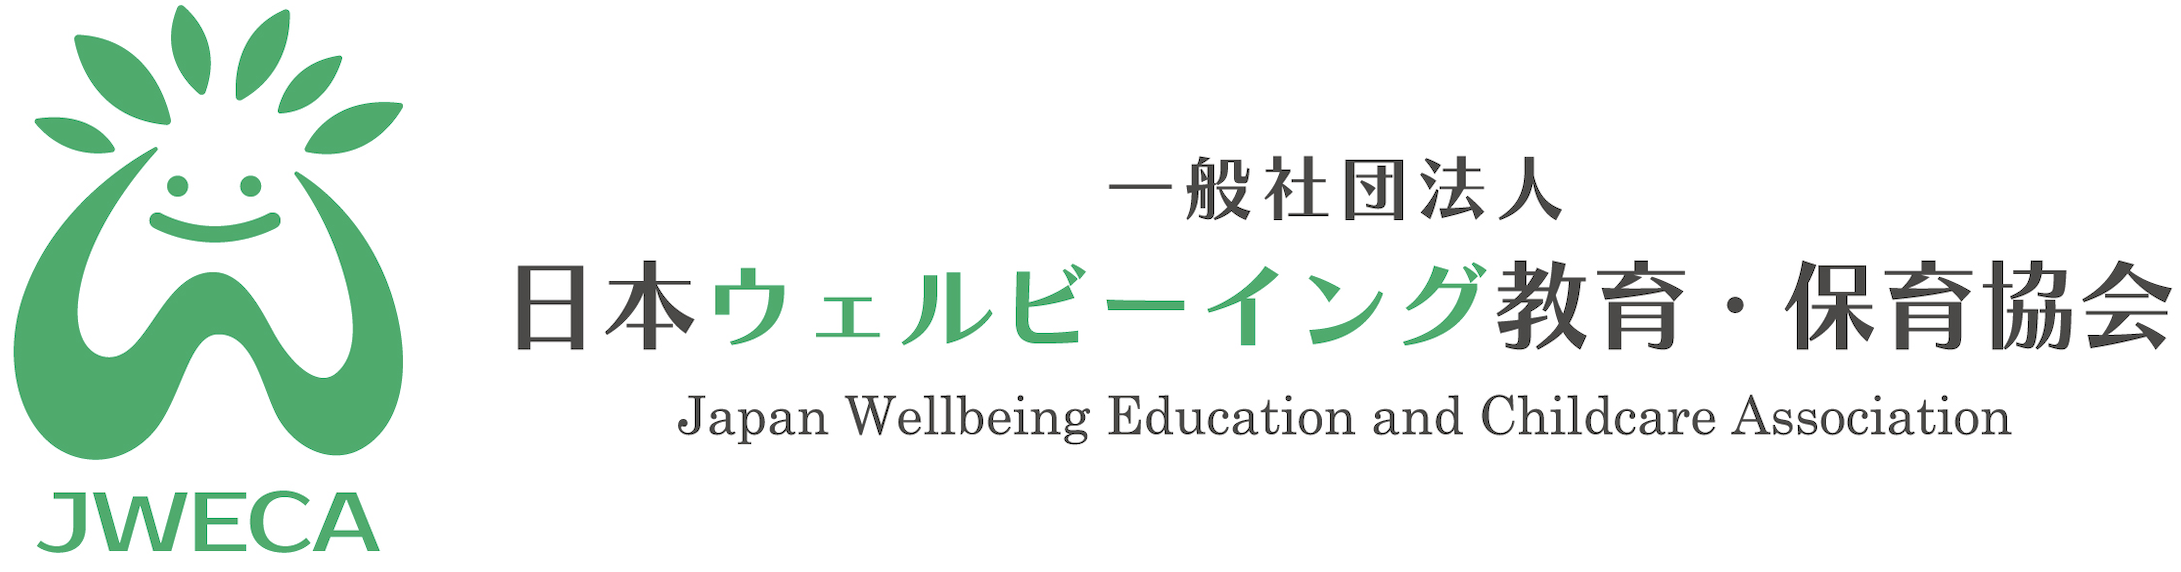 一般社団法人日本ウェルビーイング教育・保育協会